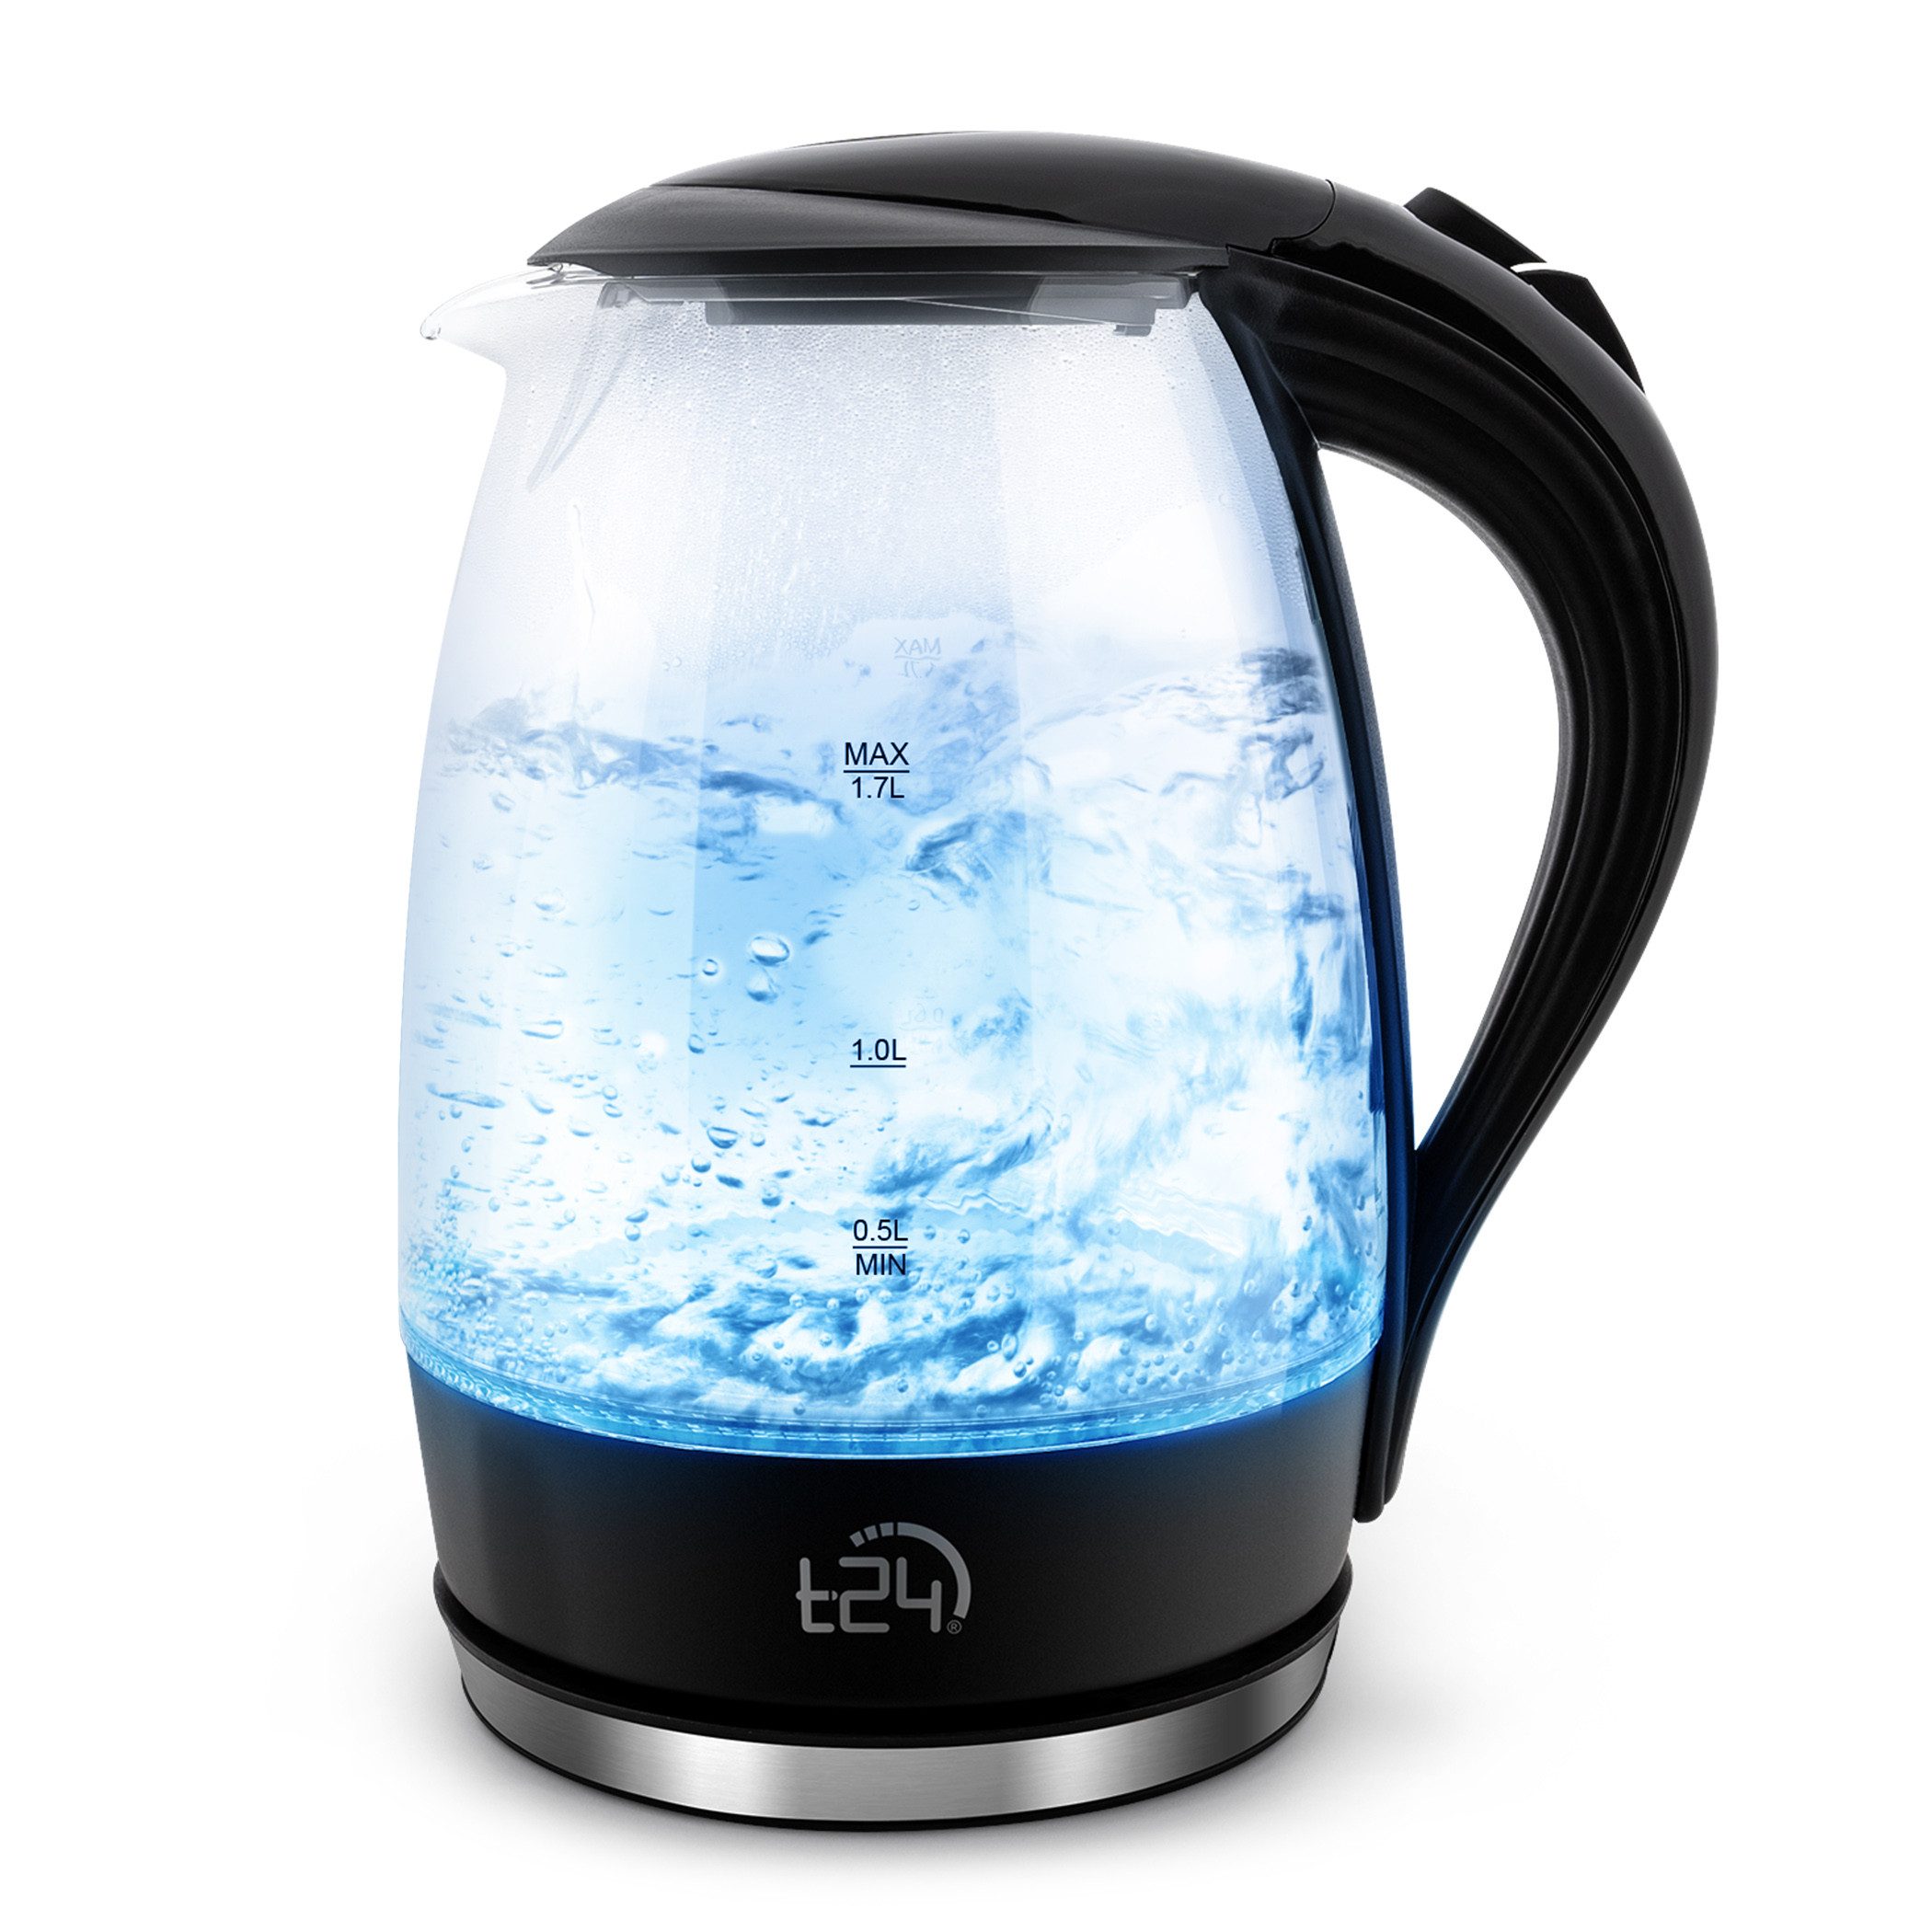 T24 Wasserkocher Glas Wasserkocher 1,7 L BPA frei THV Rheinland GS Zertifiziert, 1.7 l, 2200 W, Aus Borosilikatglas